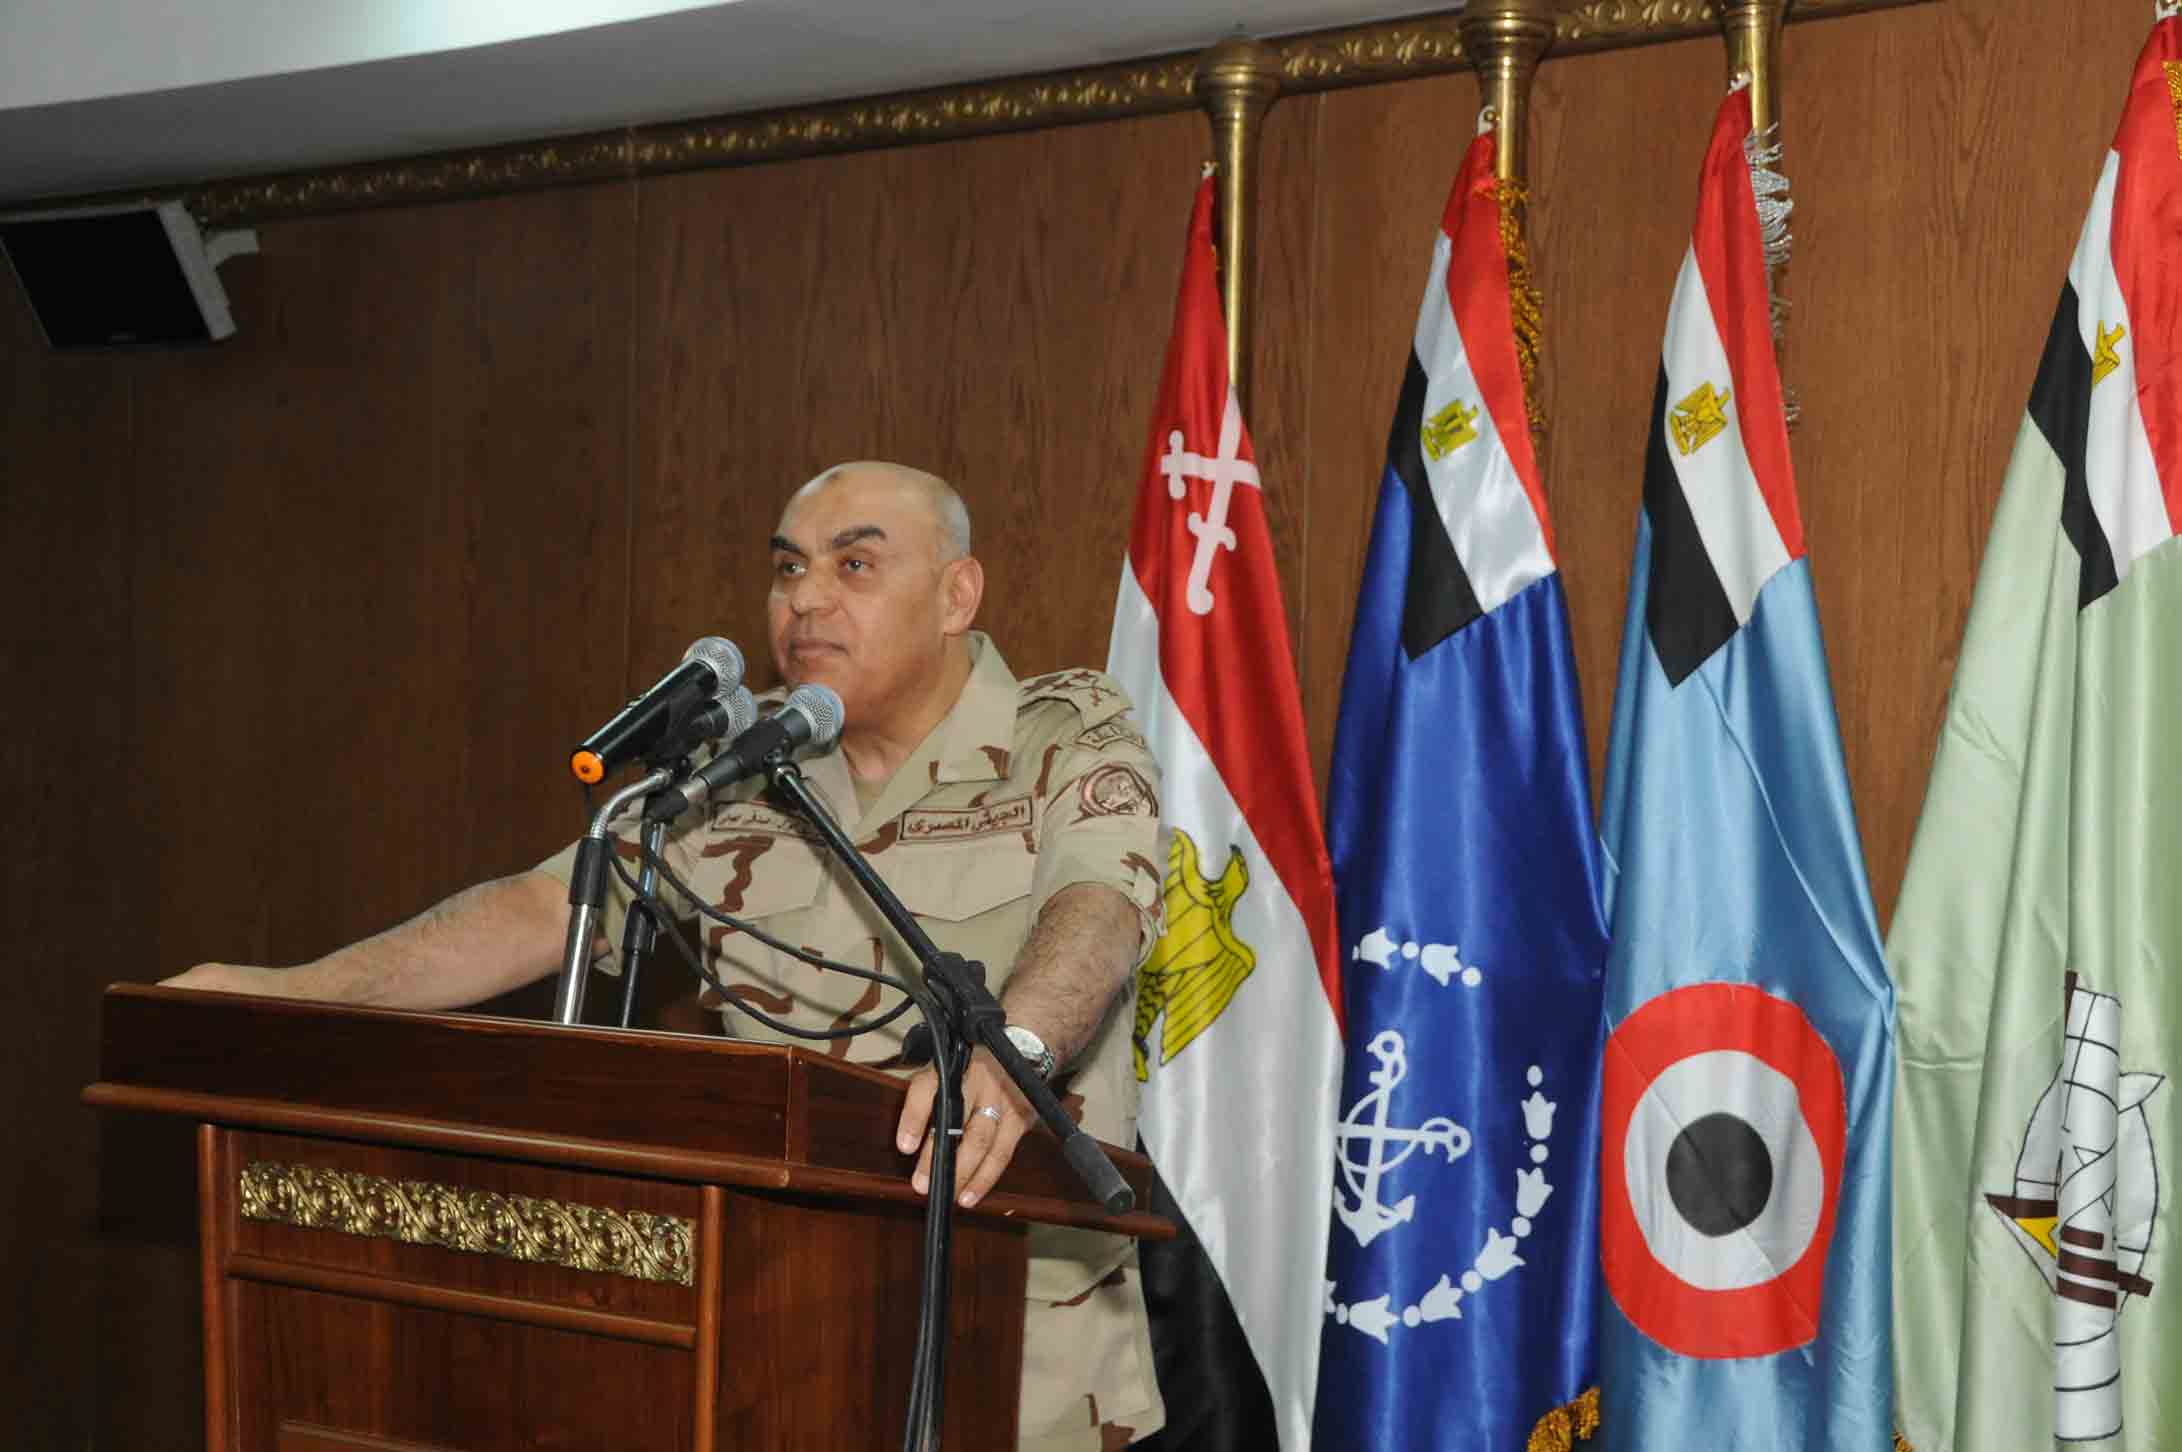   وزير الدفاع: القوات المسلحة المصرية تعمل بأقصي درجات اليقظة